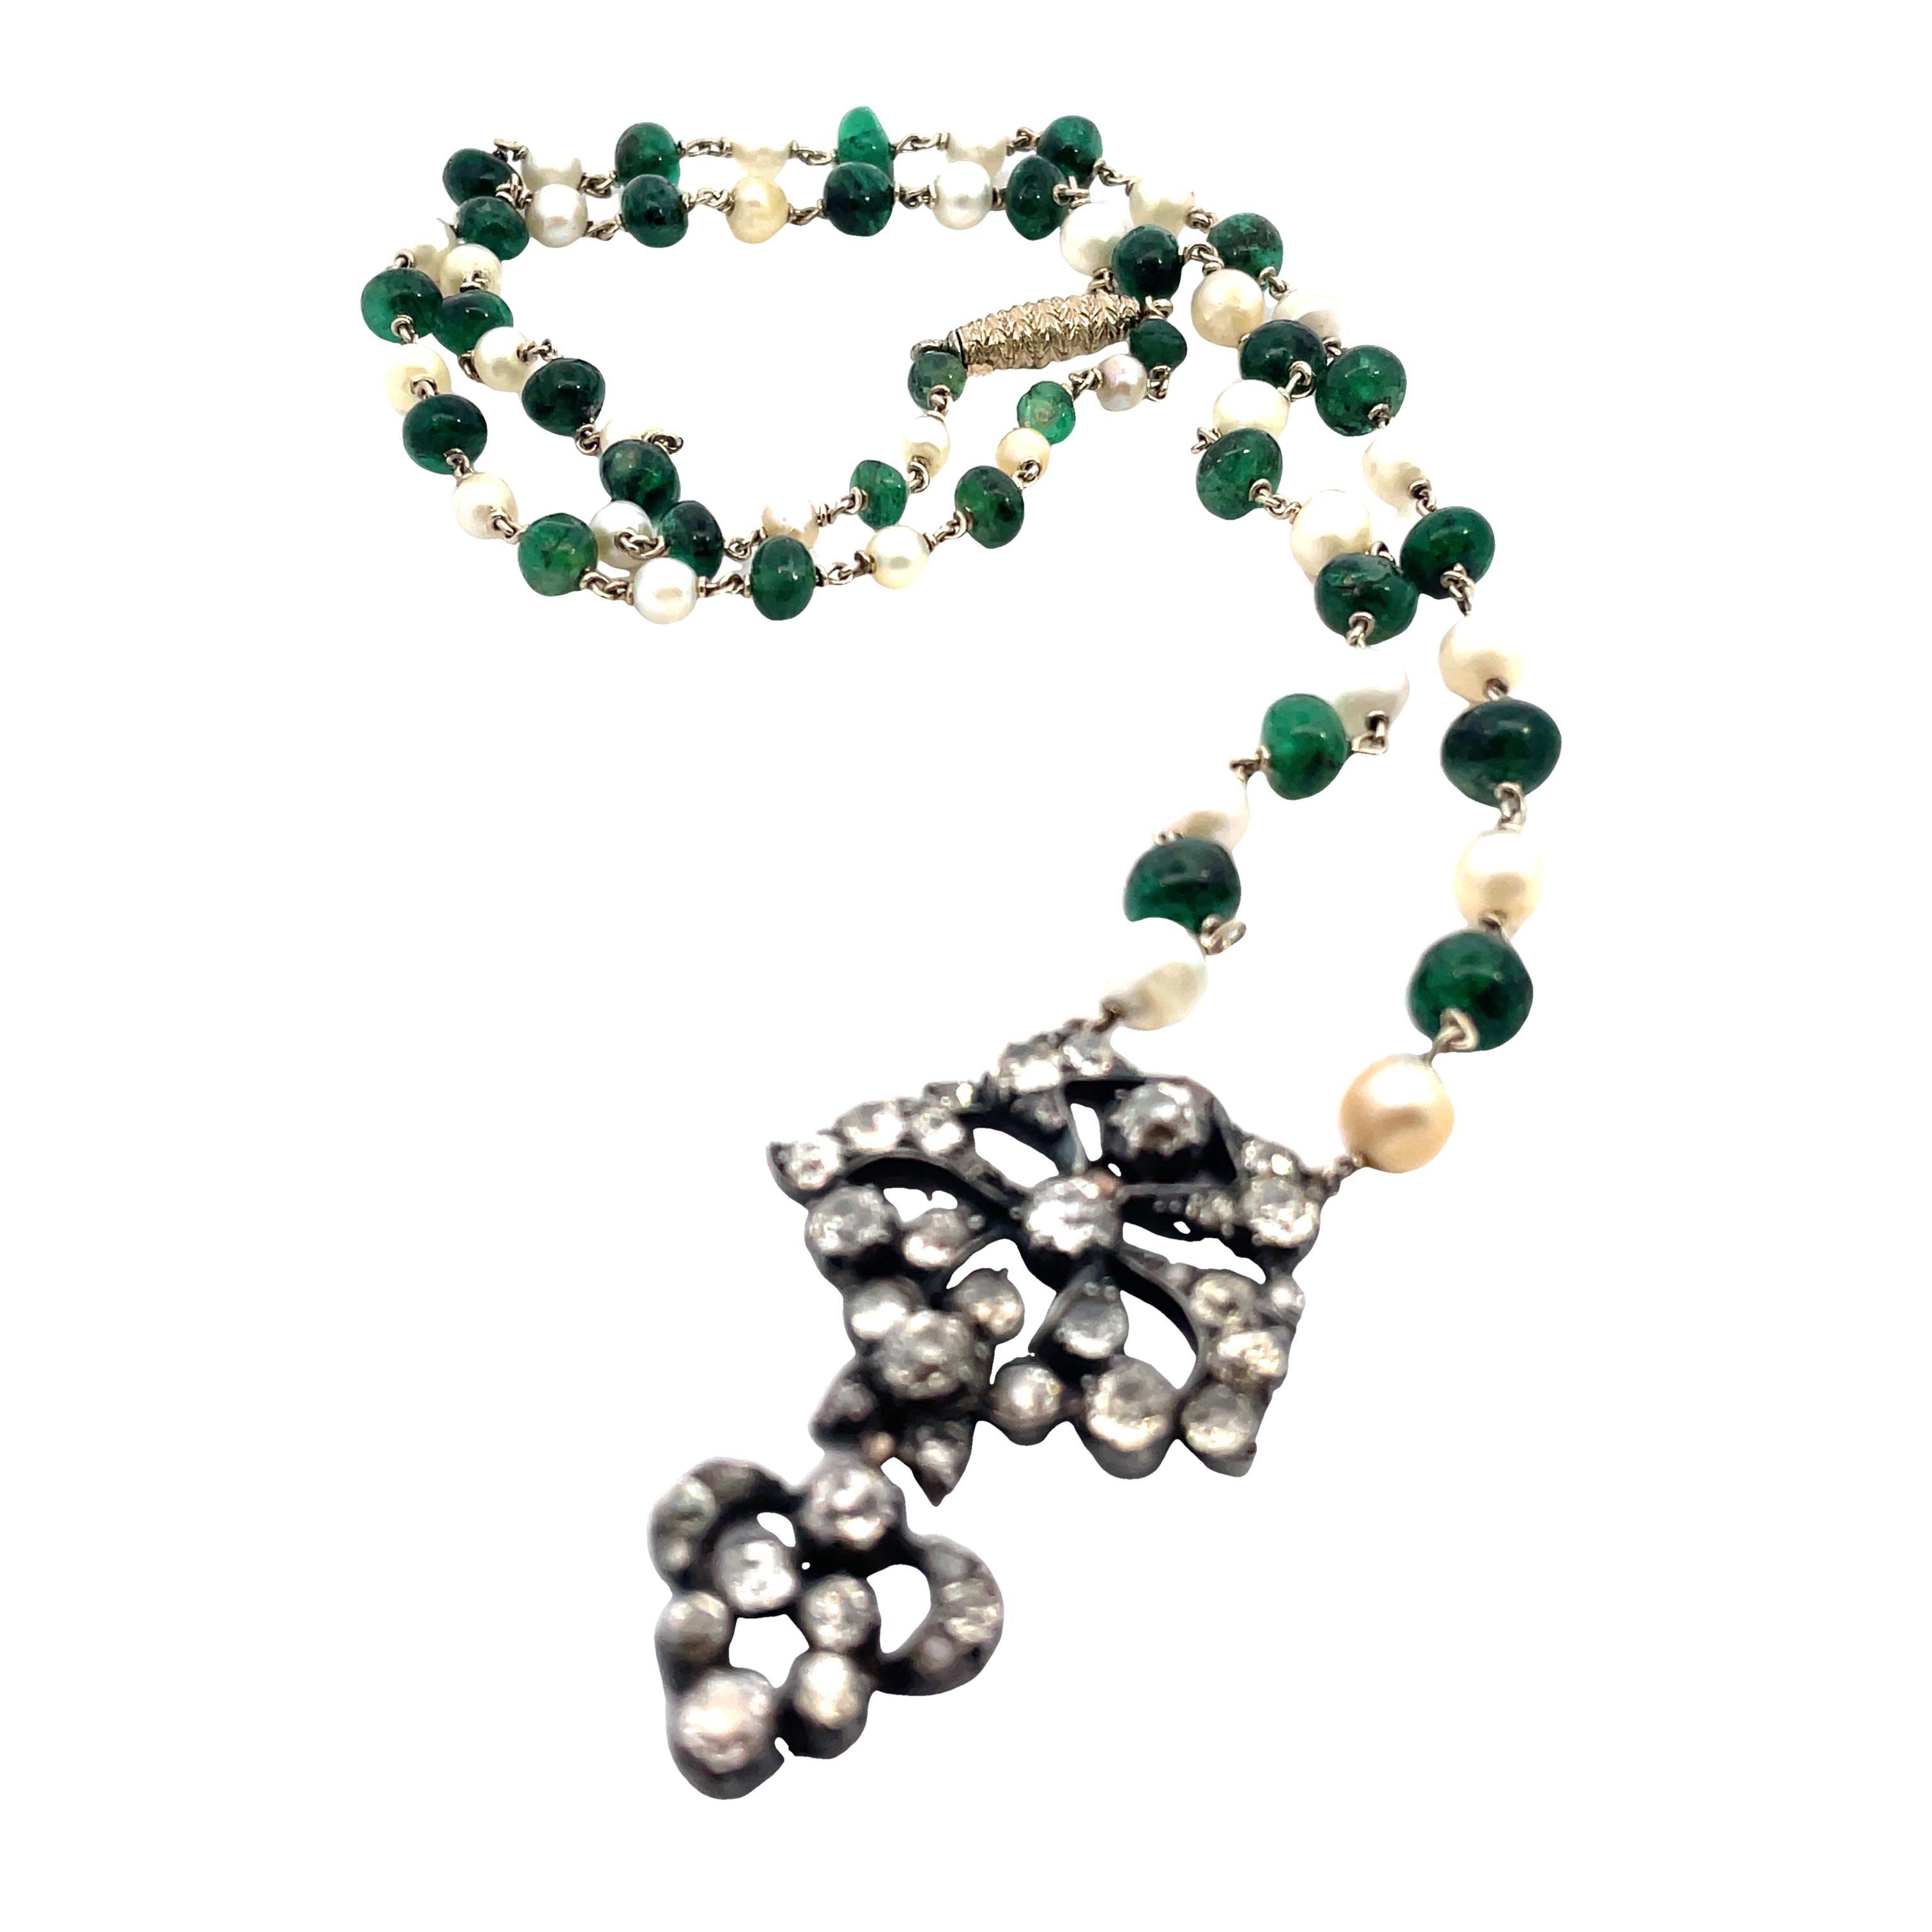 Très beau collier géorgien avec pendentif en perles naturelles et diamants, composé de 5,5 cts d'or.  diamants et 32 perles d'eau salée naturelles allant de 6,4 mm à 3,8 mm.
55 cm de long.